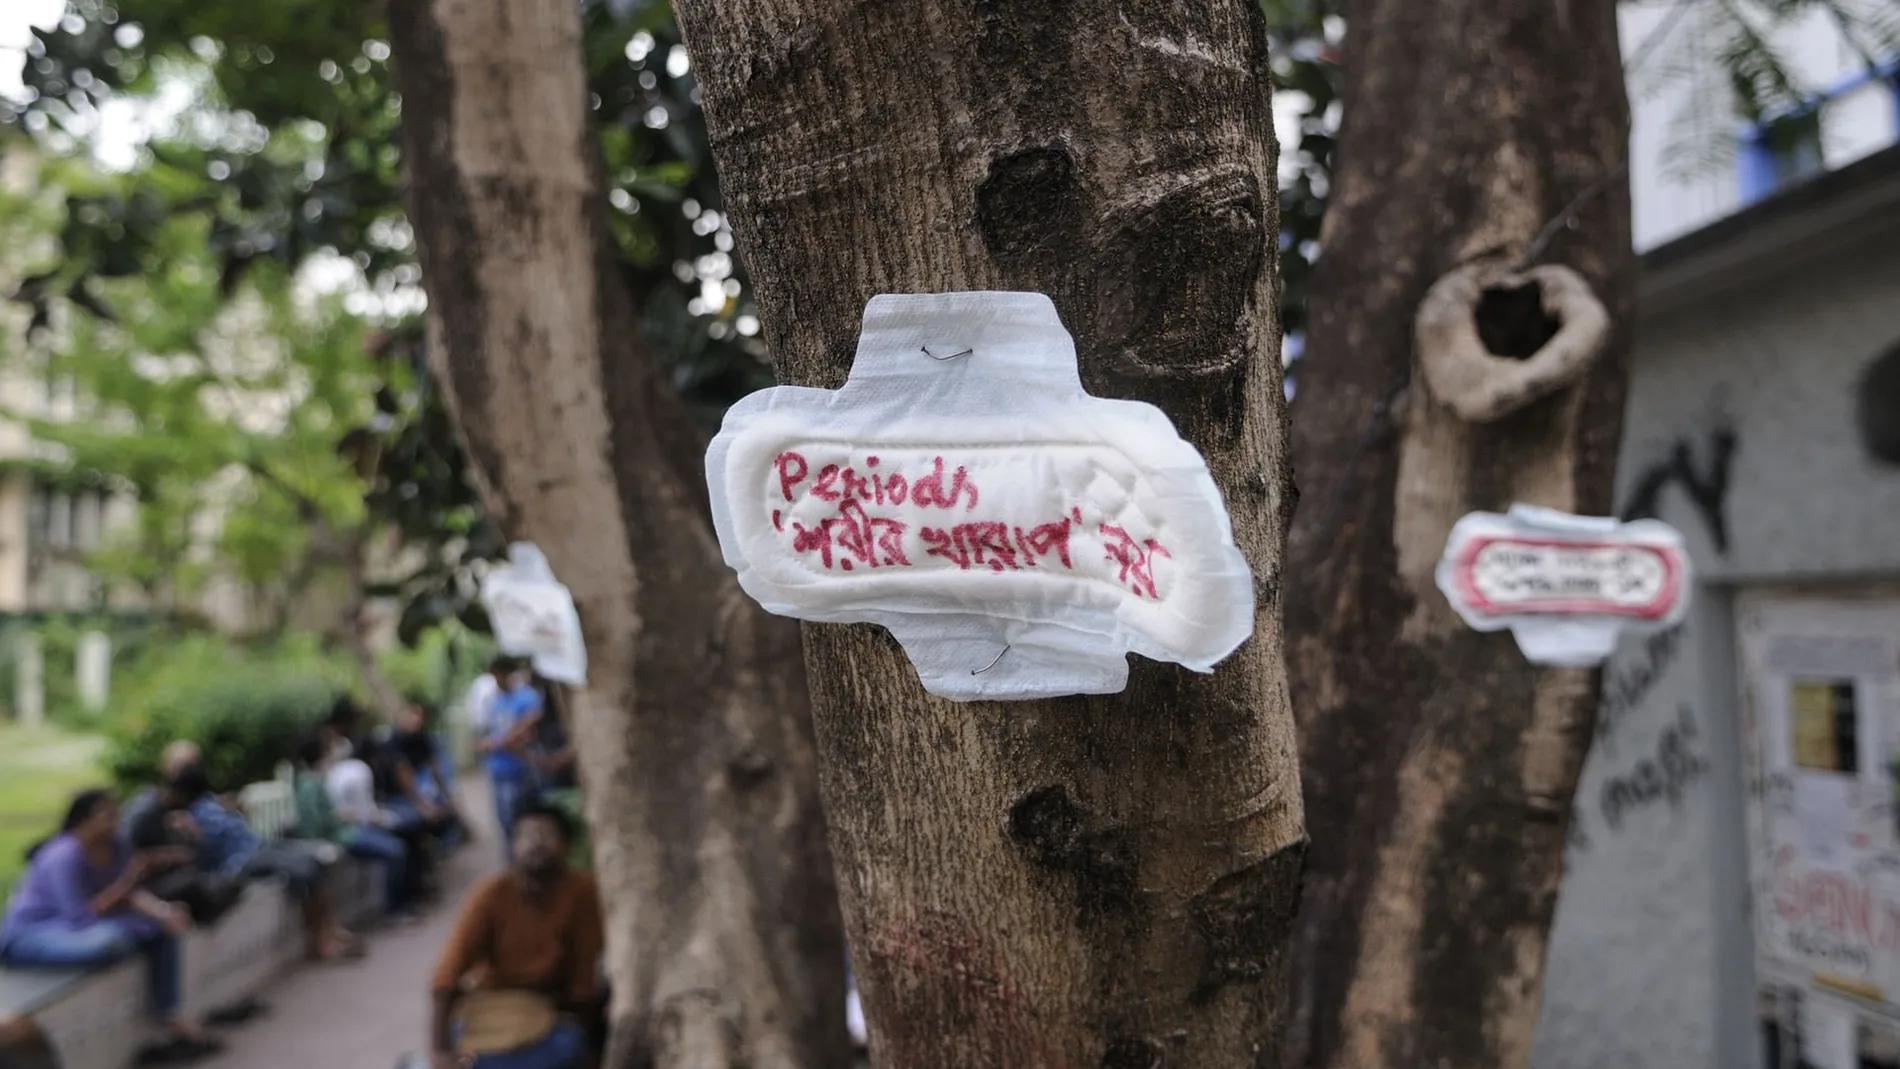 Una compresa con el mensaje "la menstruación no es una enfermedad", clavada en un árbol durante una manifestación en la India